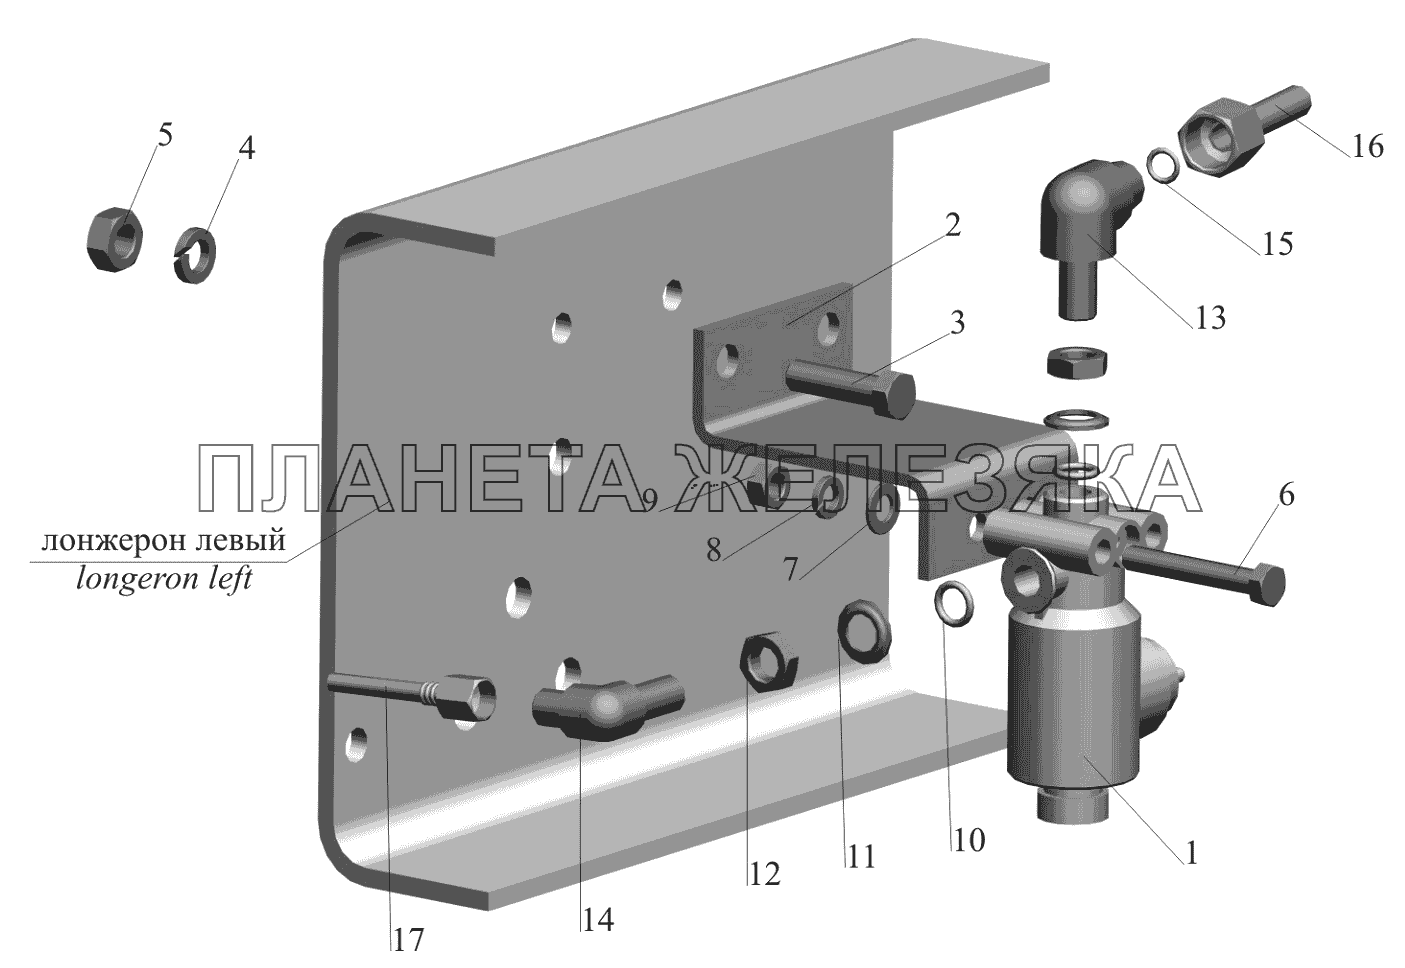 Установка тормозного клапана ASR и присоединительной арматуры МАЗ-650119